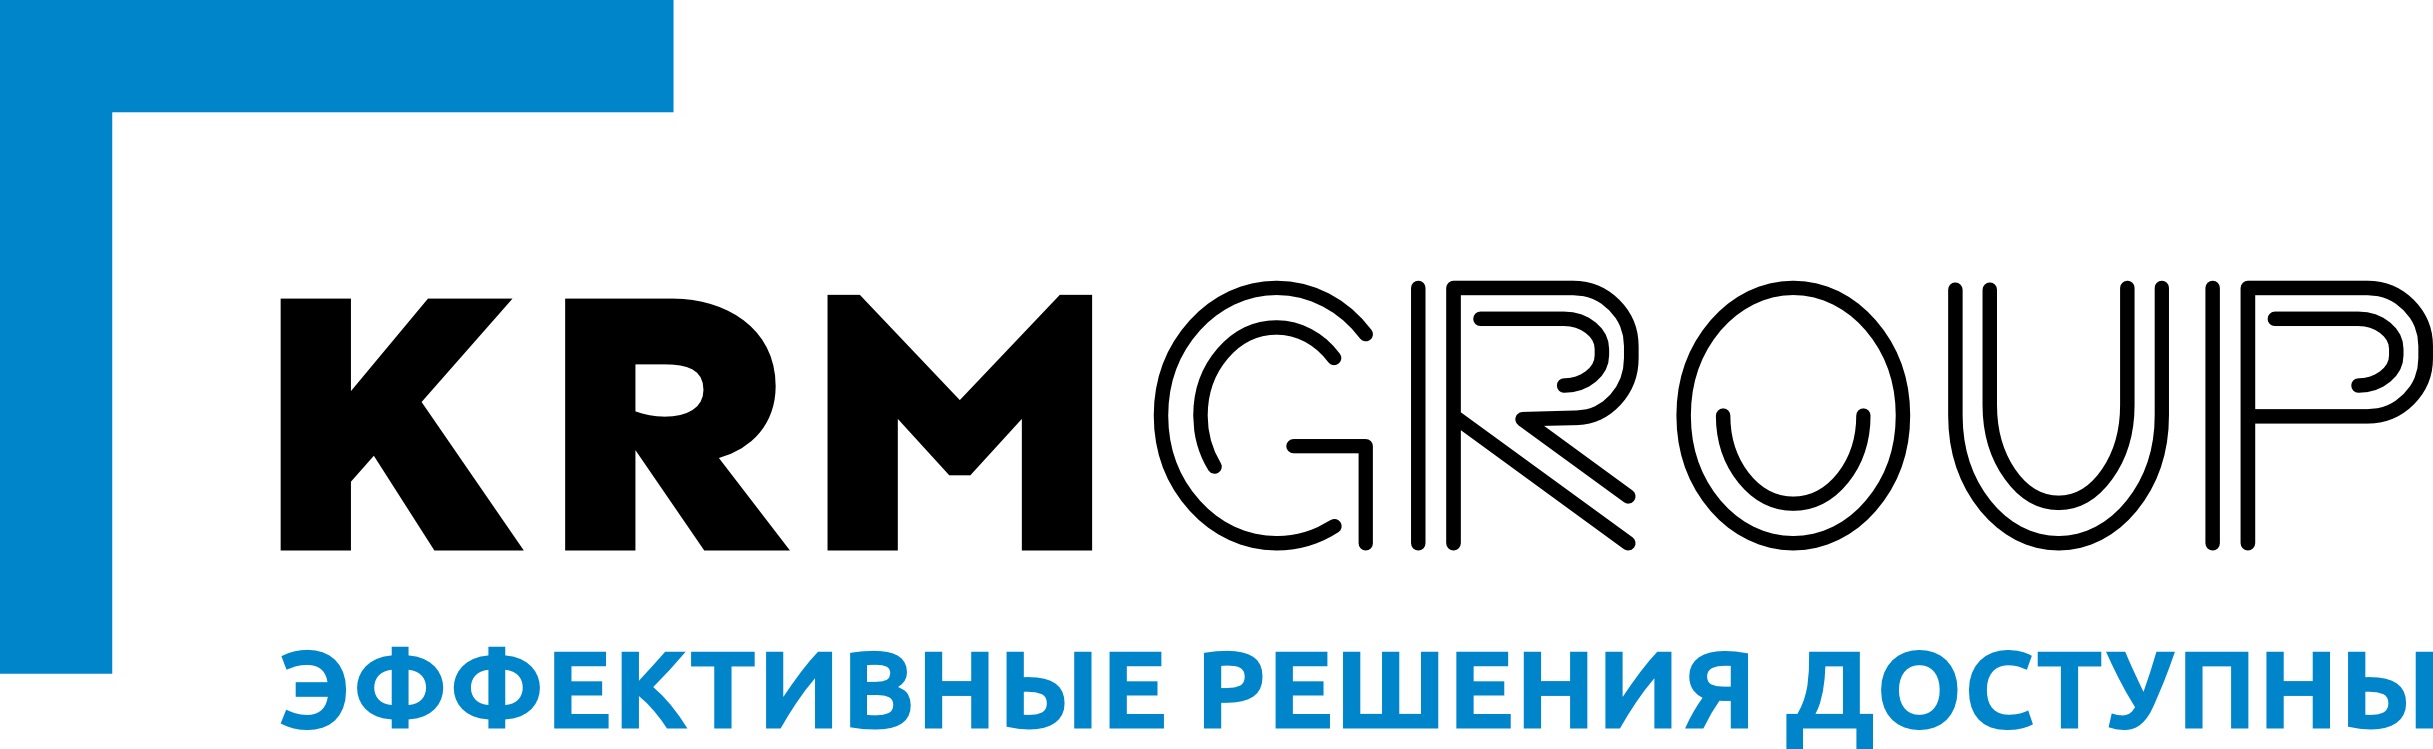 Группа компаний KRM Group